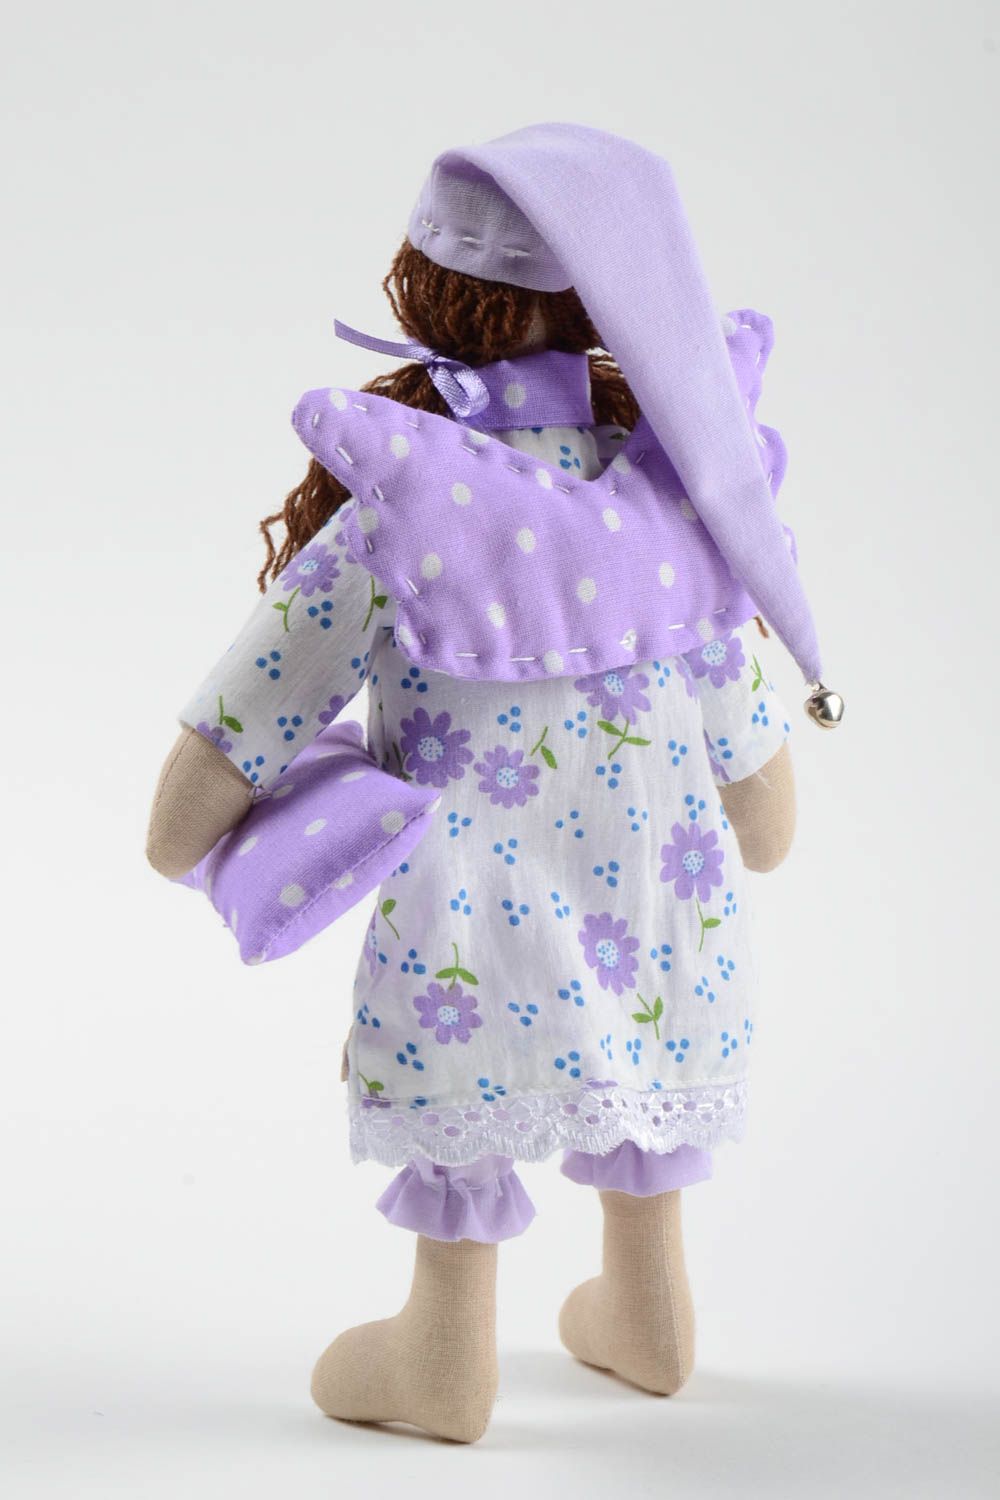 Bambola bella in stoffa fatta a mano pupazzo tessile originale d arredo foto 4